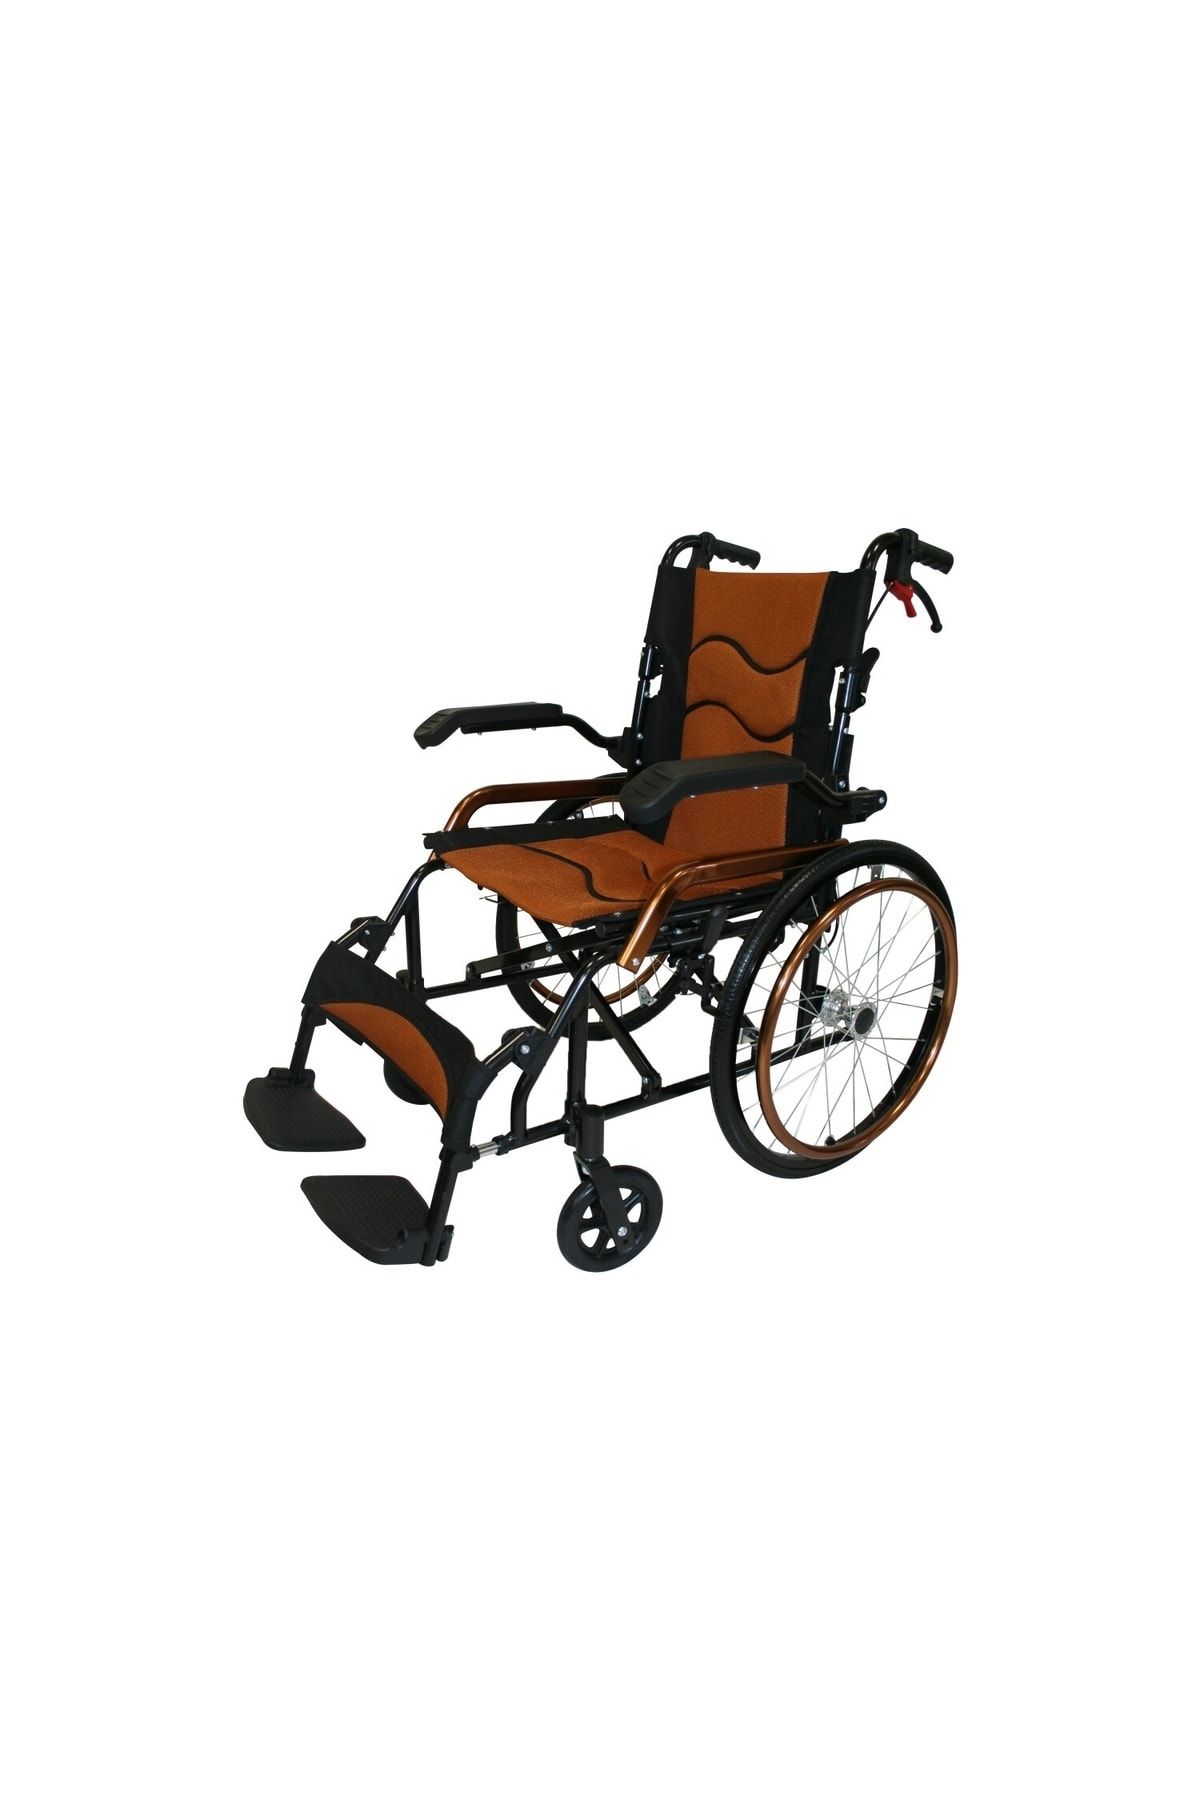 POYLİN Katlanabilir Orta Tekerlekli Refakatçi Tekerlekli Sandalye  + Yan ürün  - P807